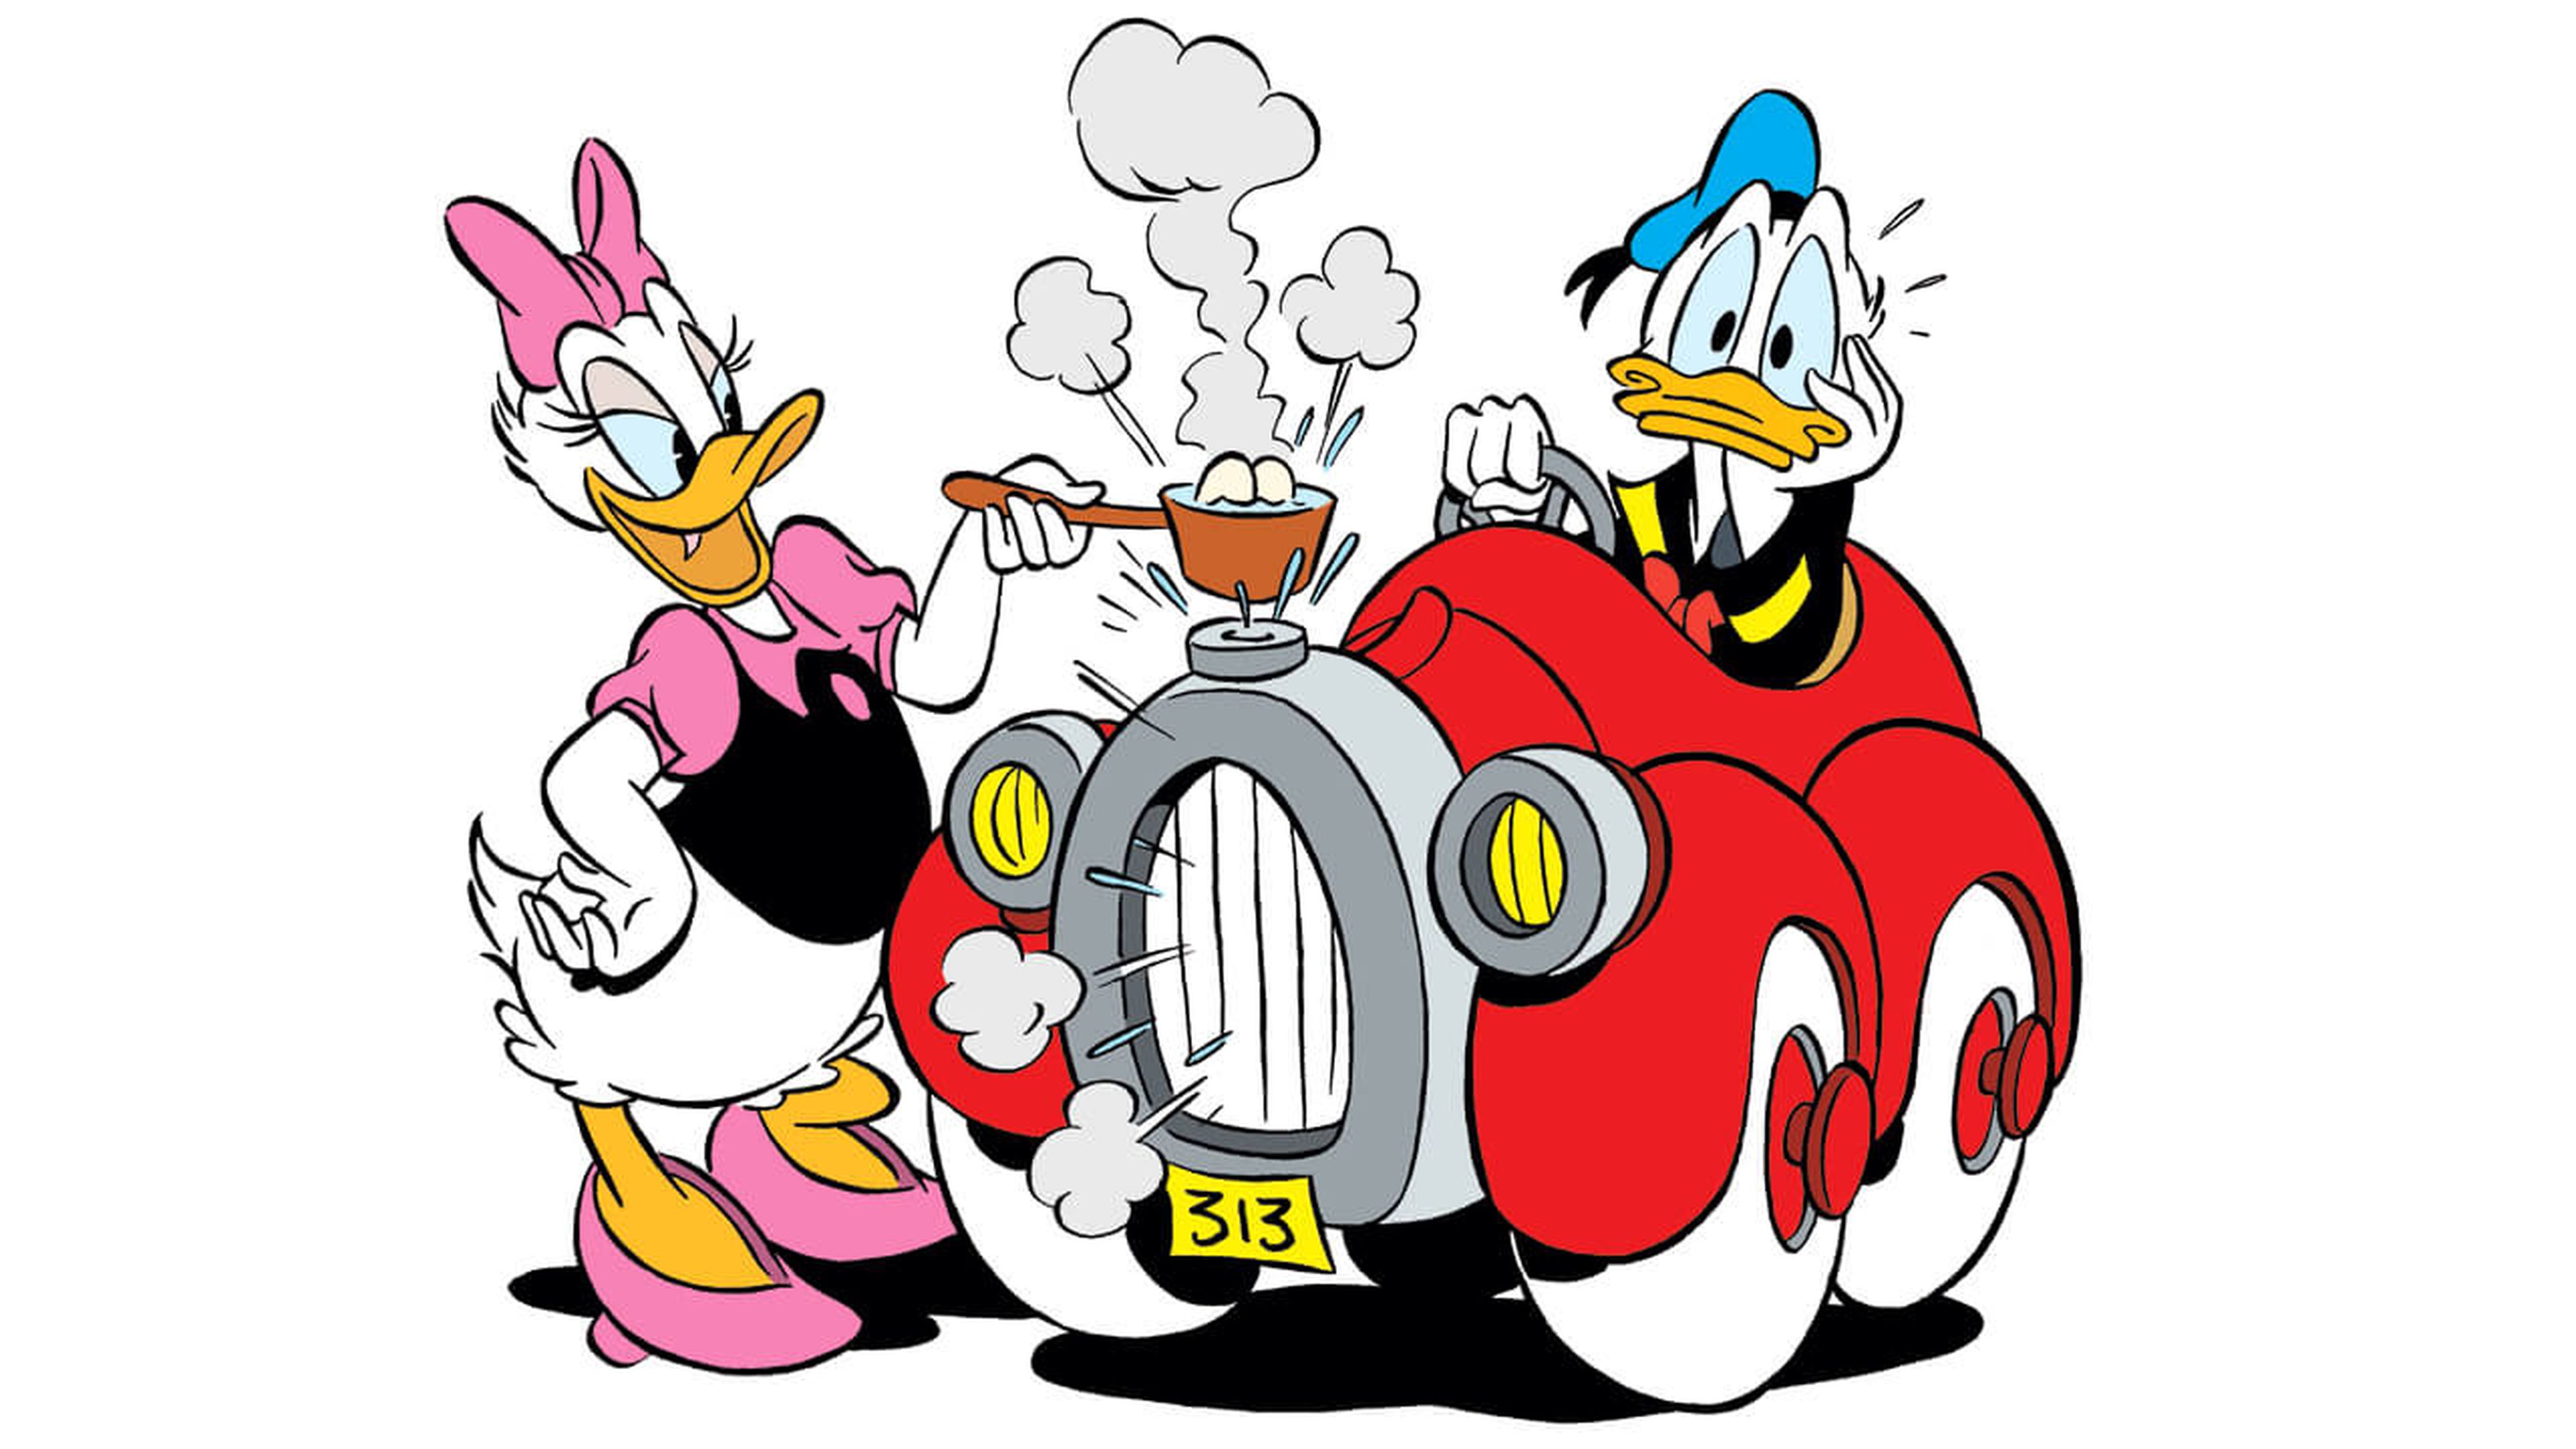 El coche del pato Donald